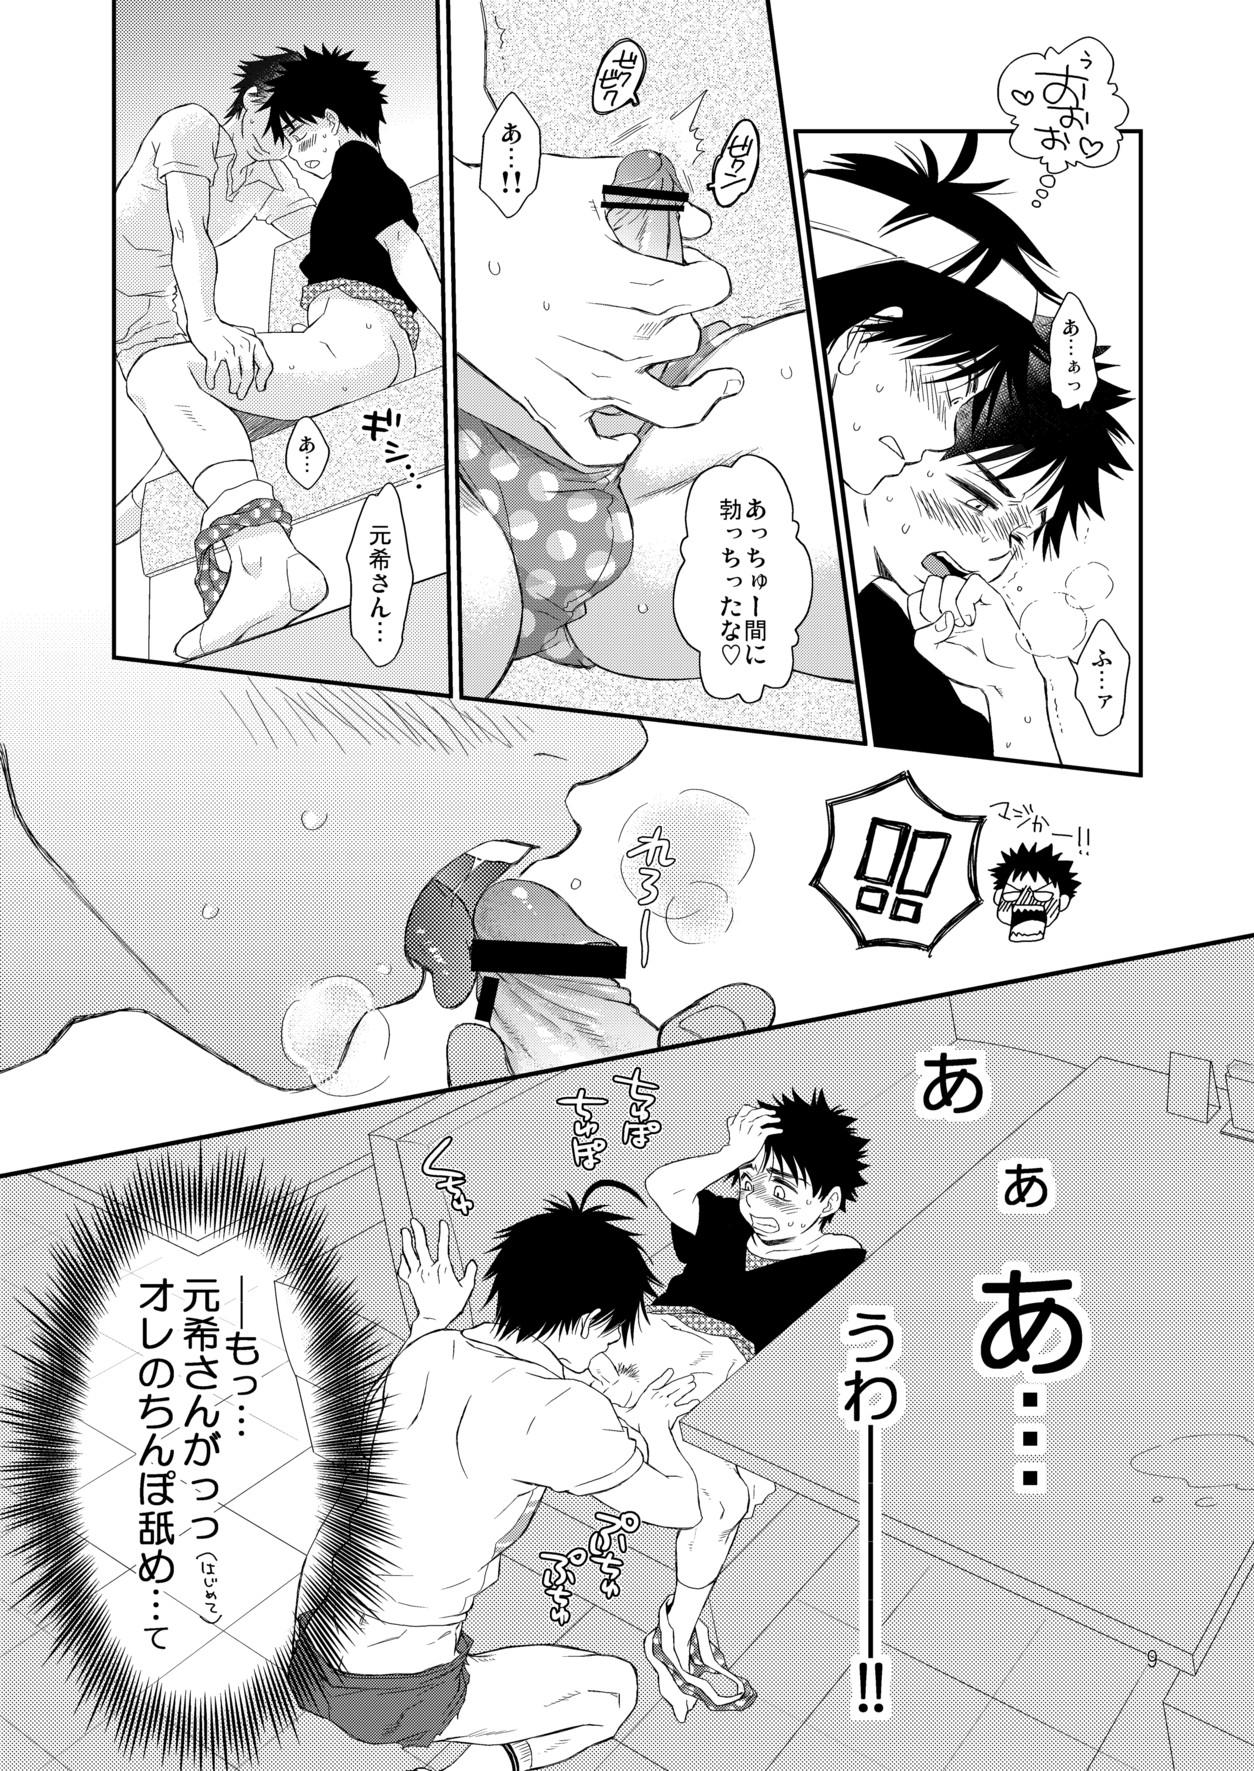 Carro Tsuyudaku Fight! 9 - Ookiku furikabutte Shy - Page 9